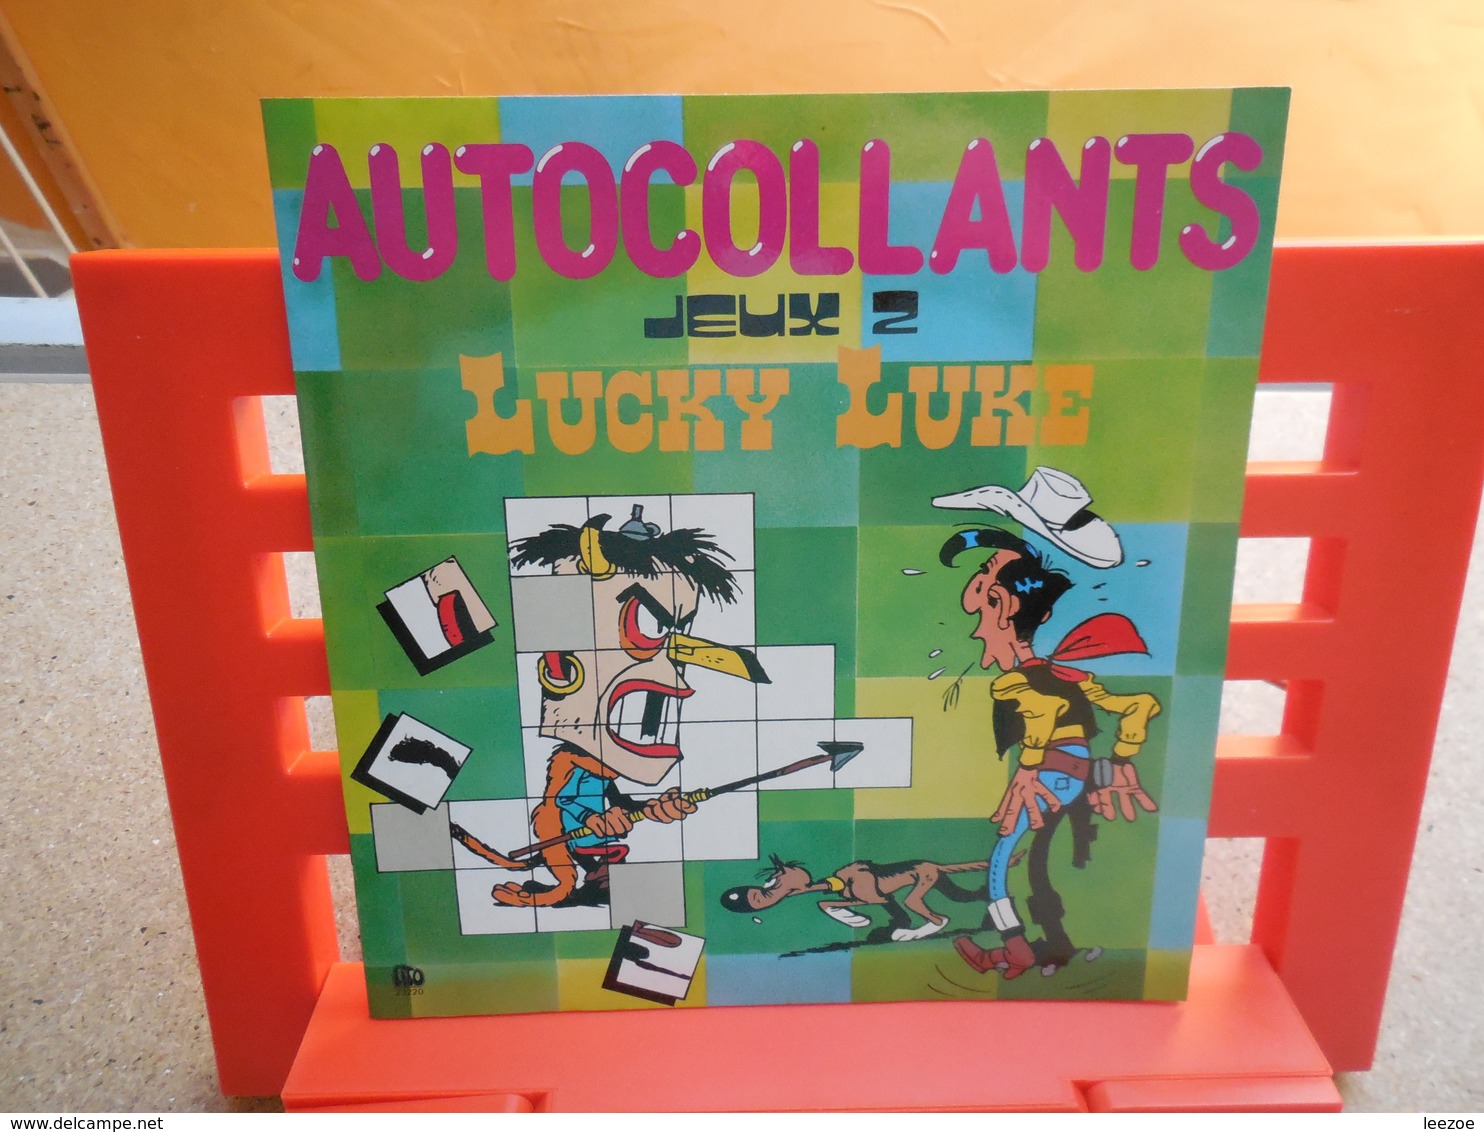 Objets Dérivés BD Dargaud, Lucky Luke Autocollants Jeux 2, éditions Lito-paris, 1985...3C0420 - Stickers